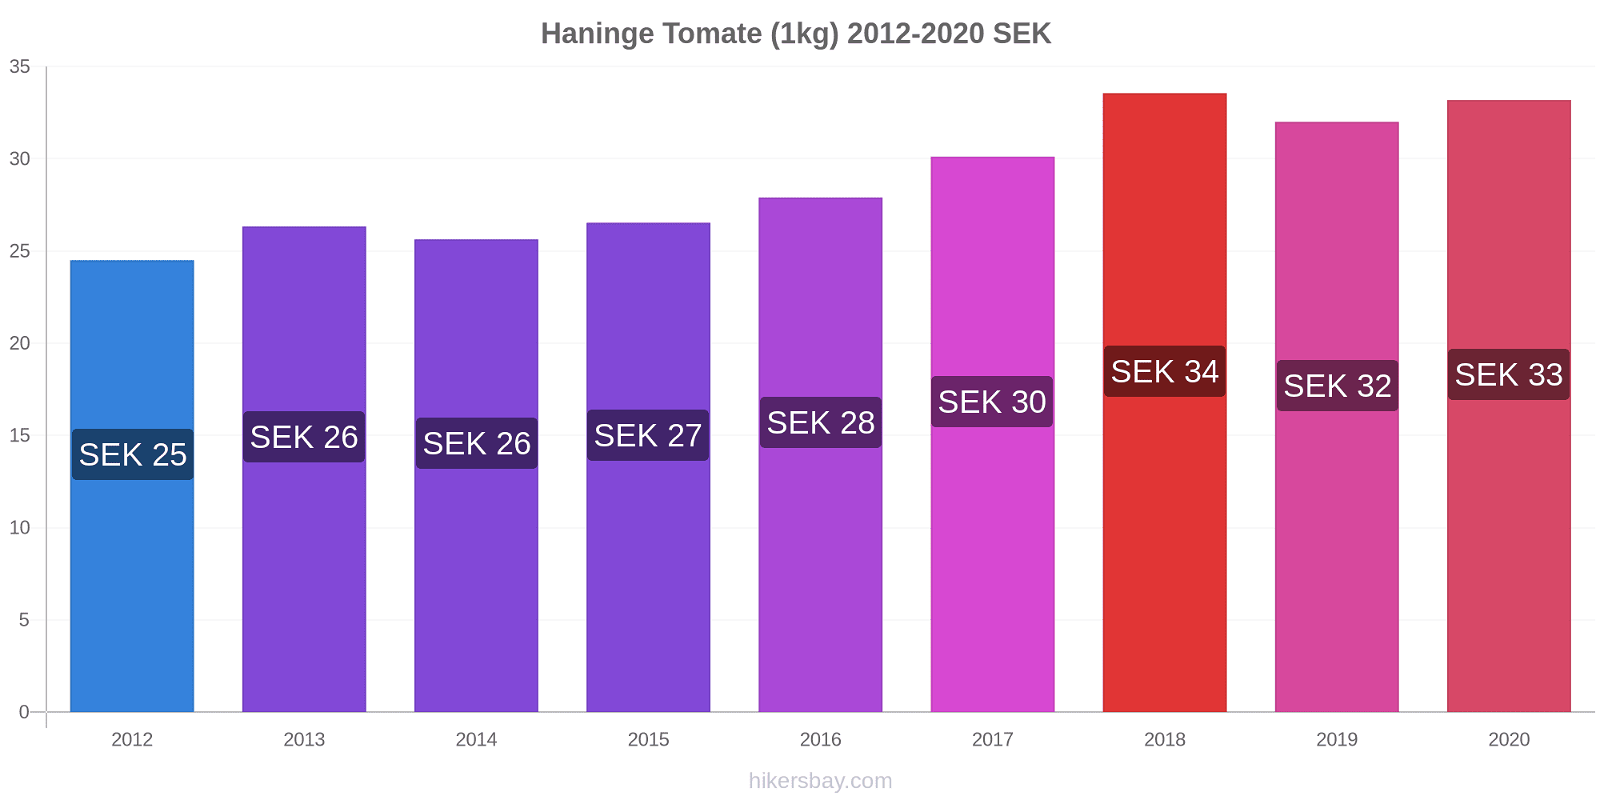 Haninge variação de preço Tomate (1kg) hikersbay.com